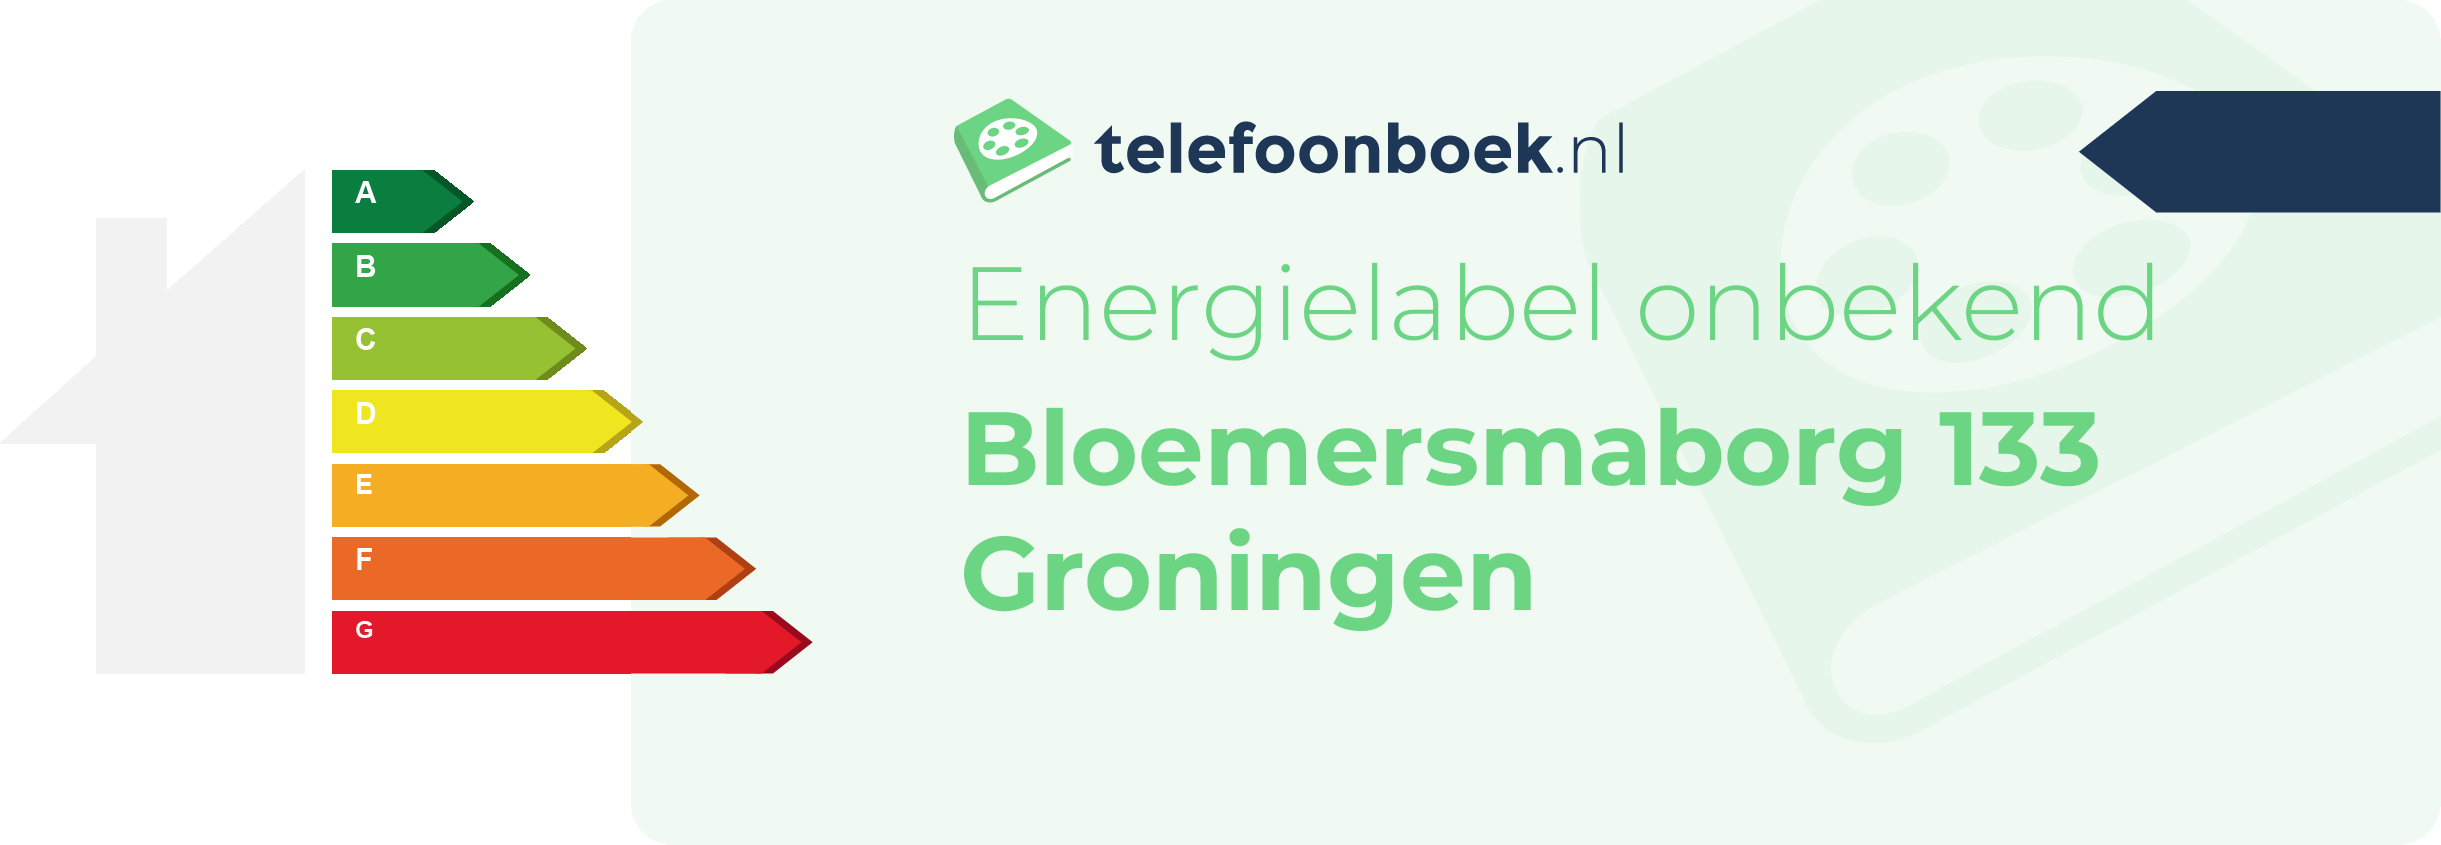 Energielabel Bloemersmaborg 133 Groningen